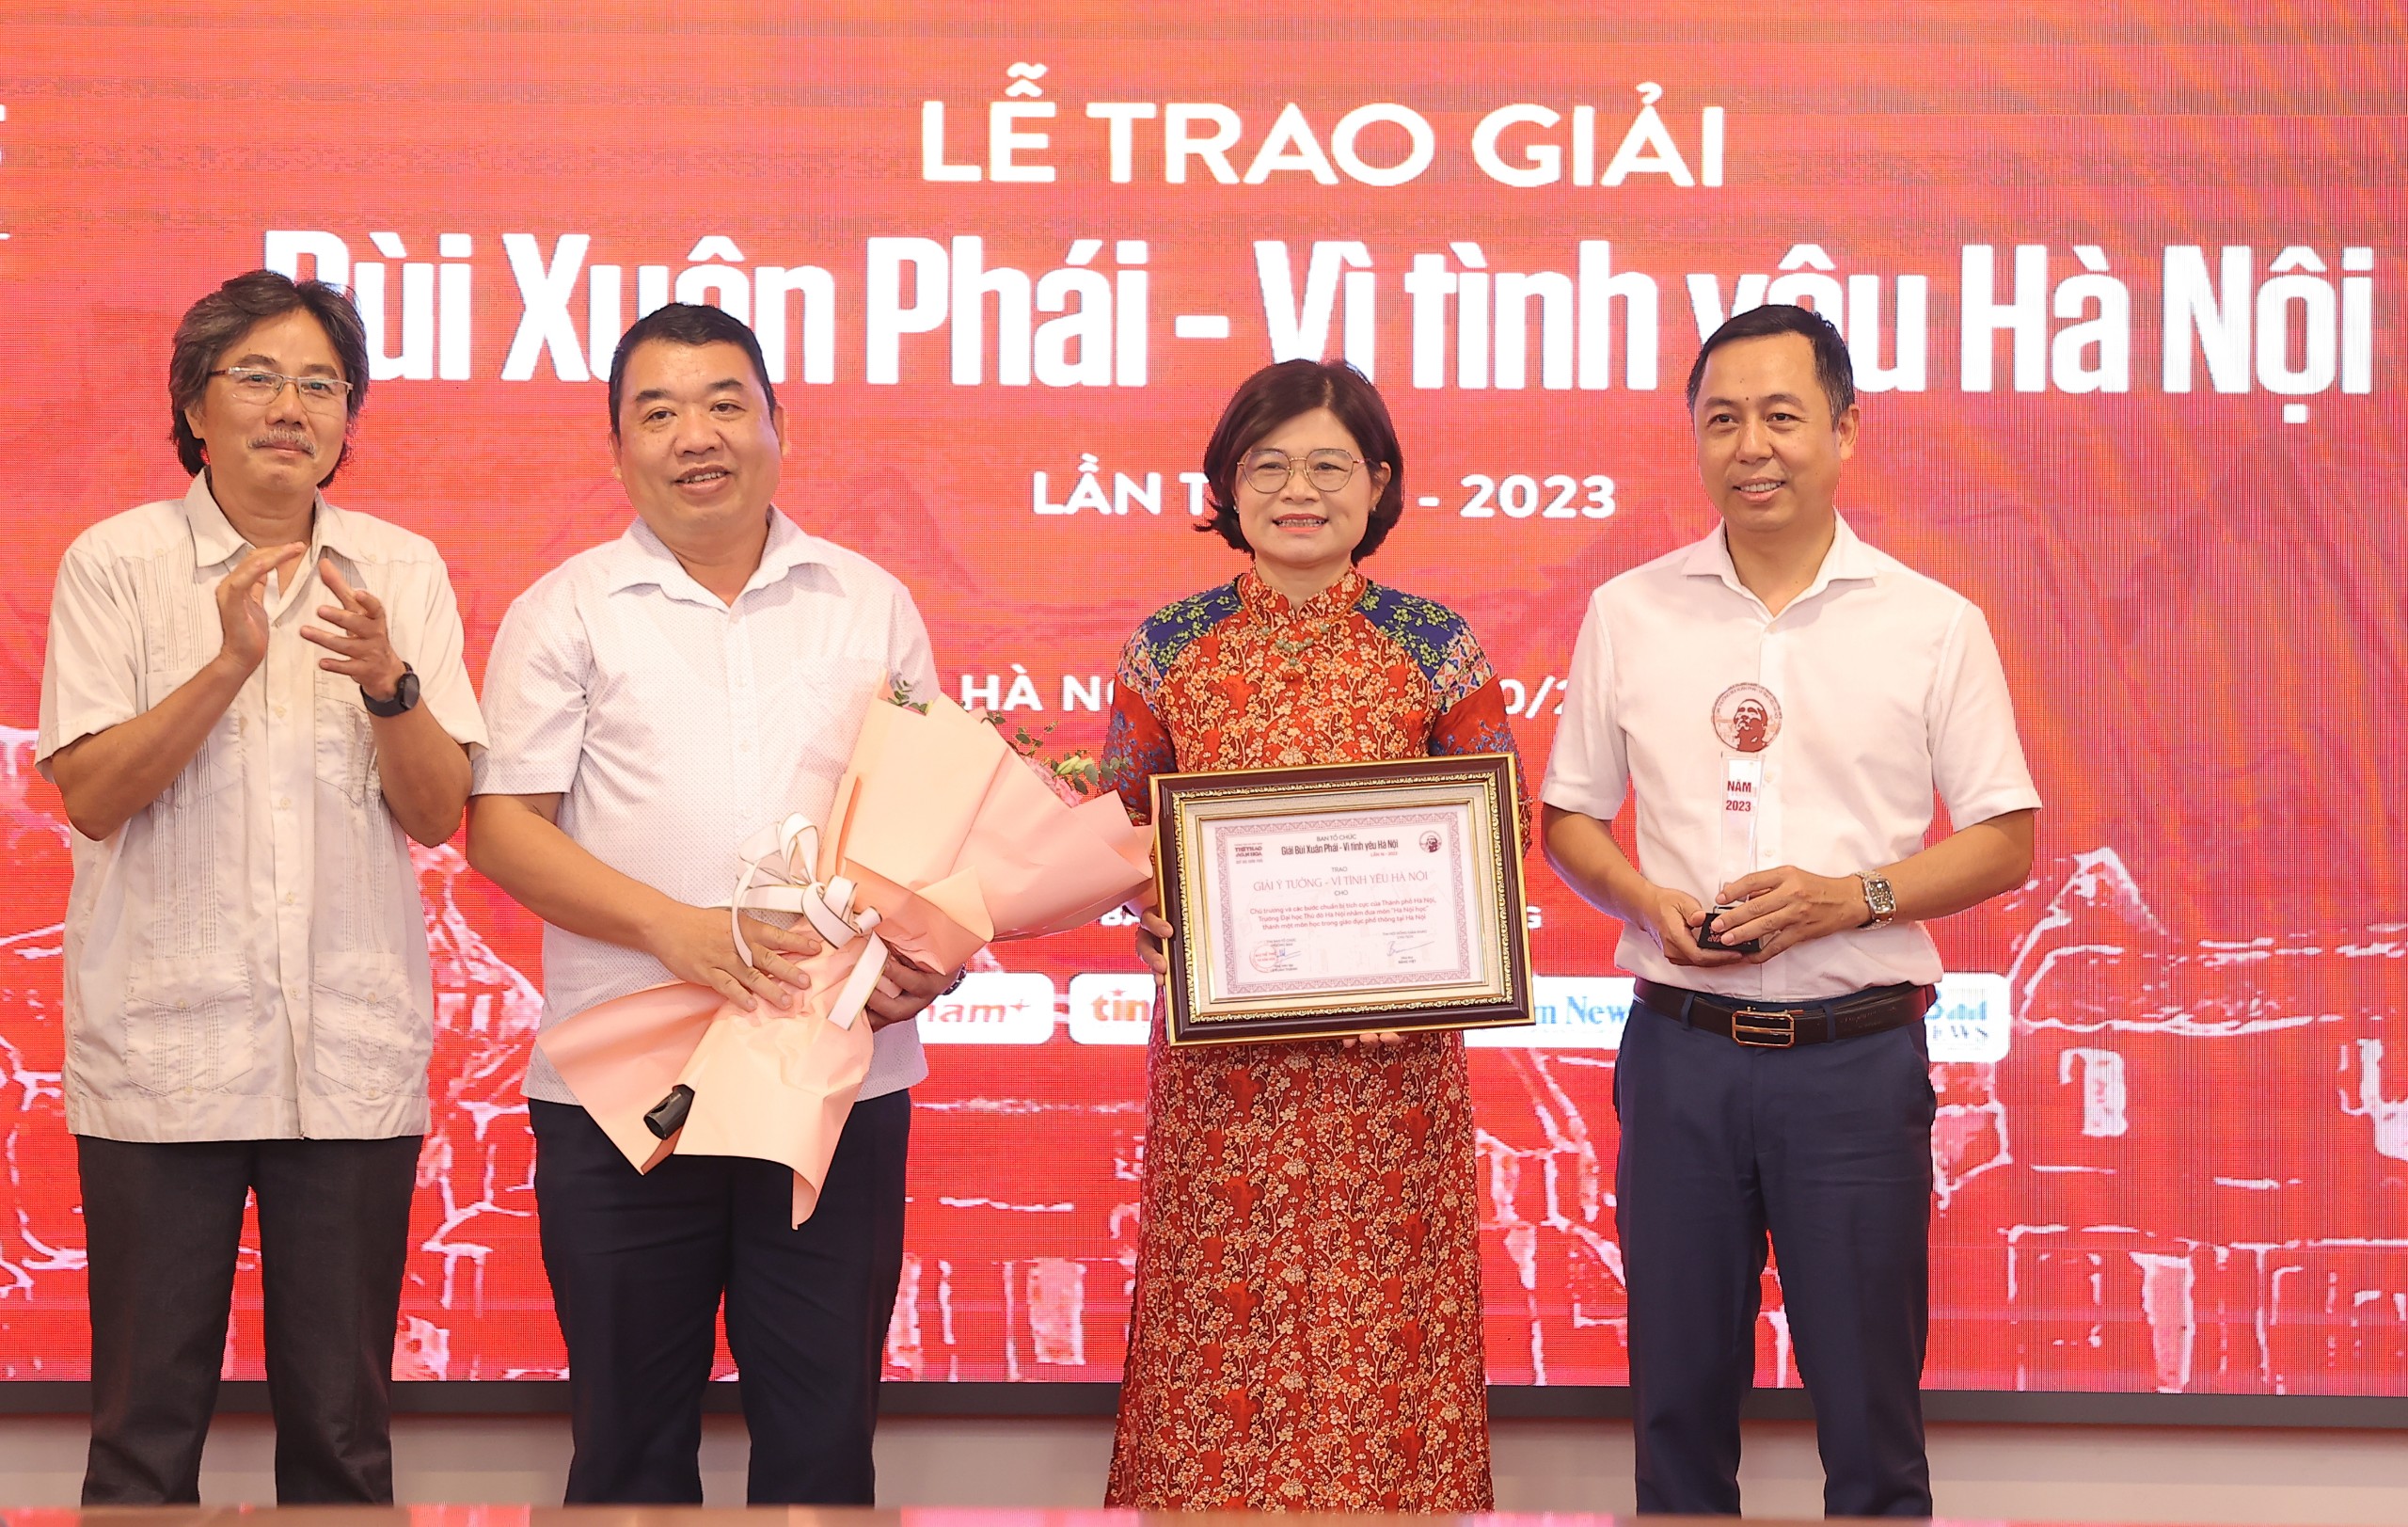 Trường Đại học Thủ đô Hà Nội được vinh danh tại Lễ trao giải thưởng Bùi Xuân Phái – Vì tình yêu Hà Nội lần thứ 16